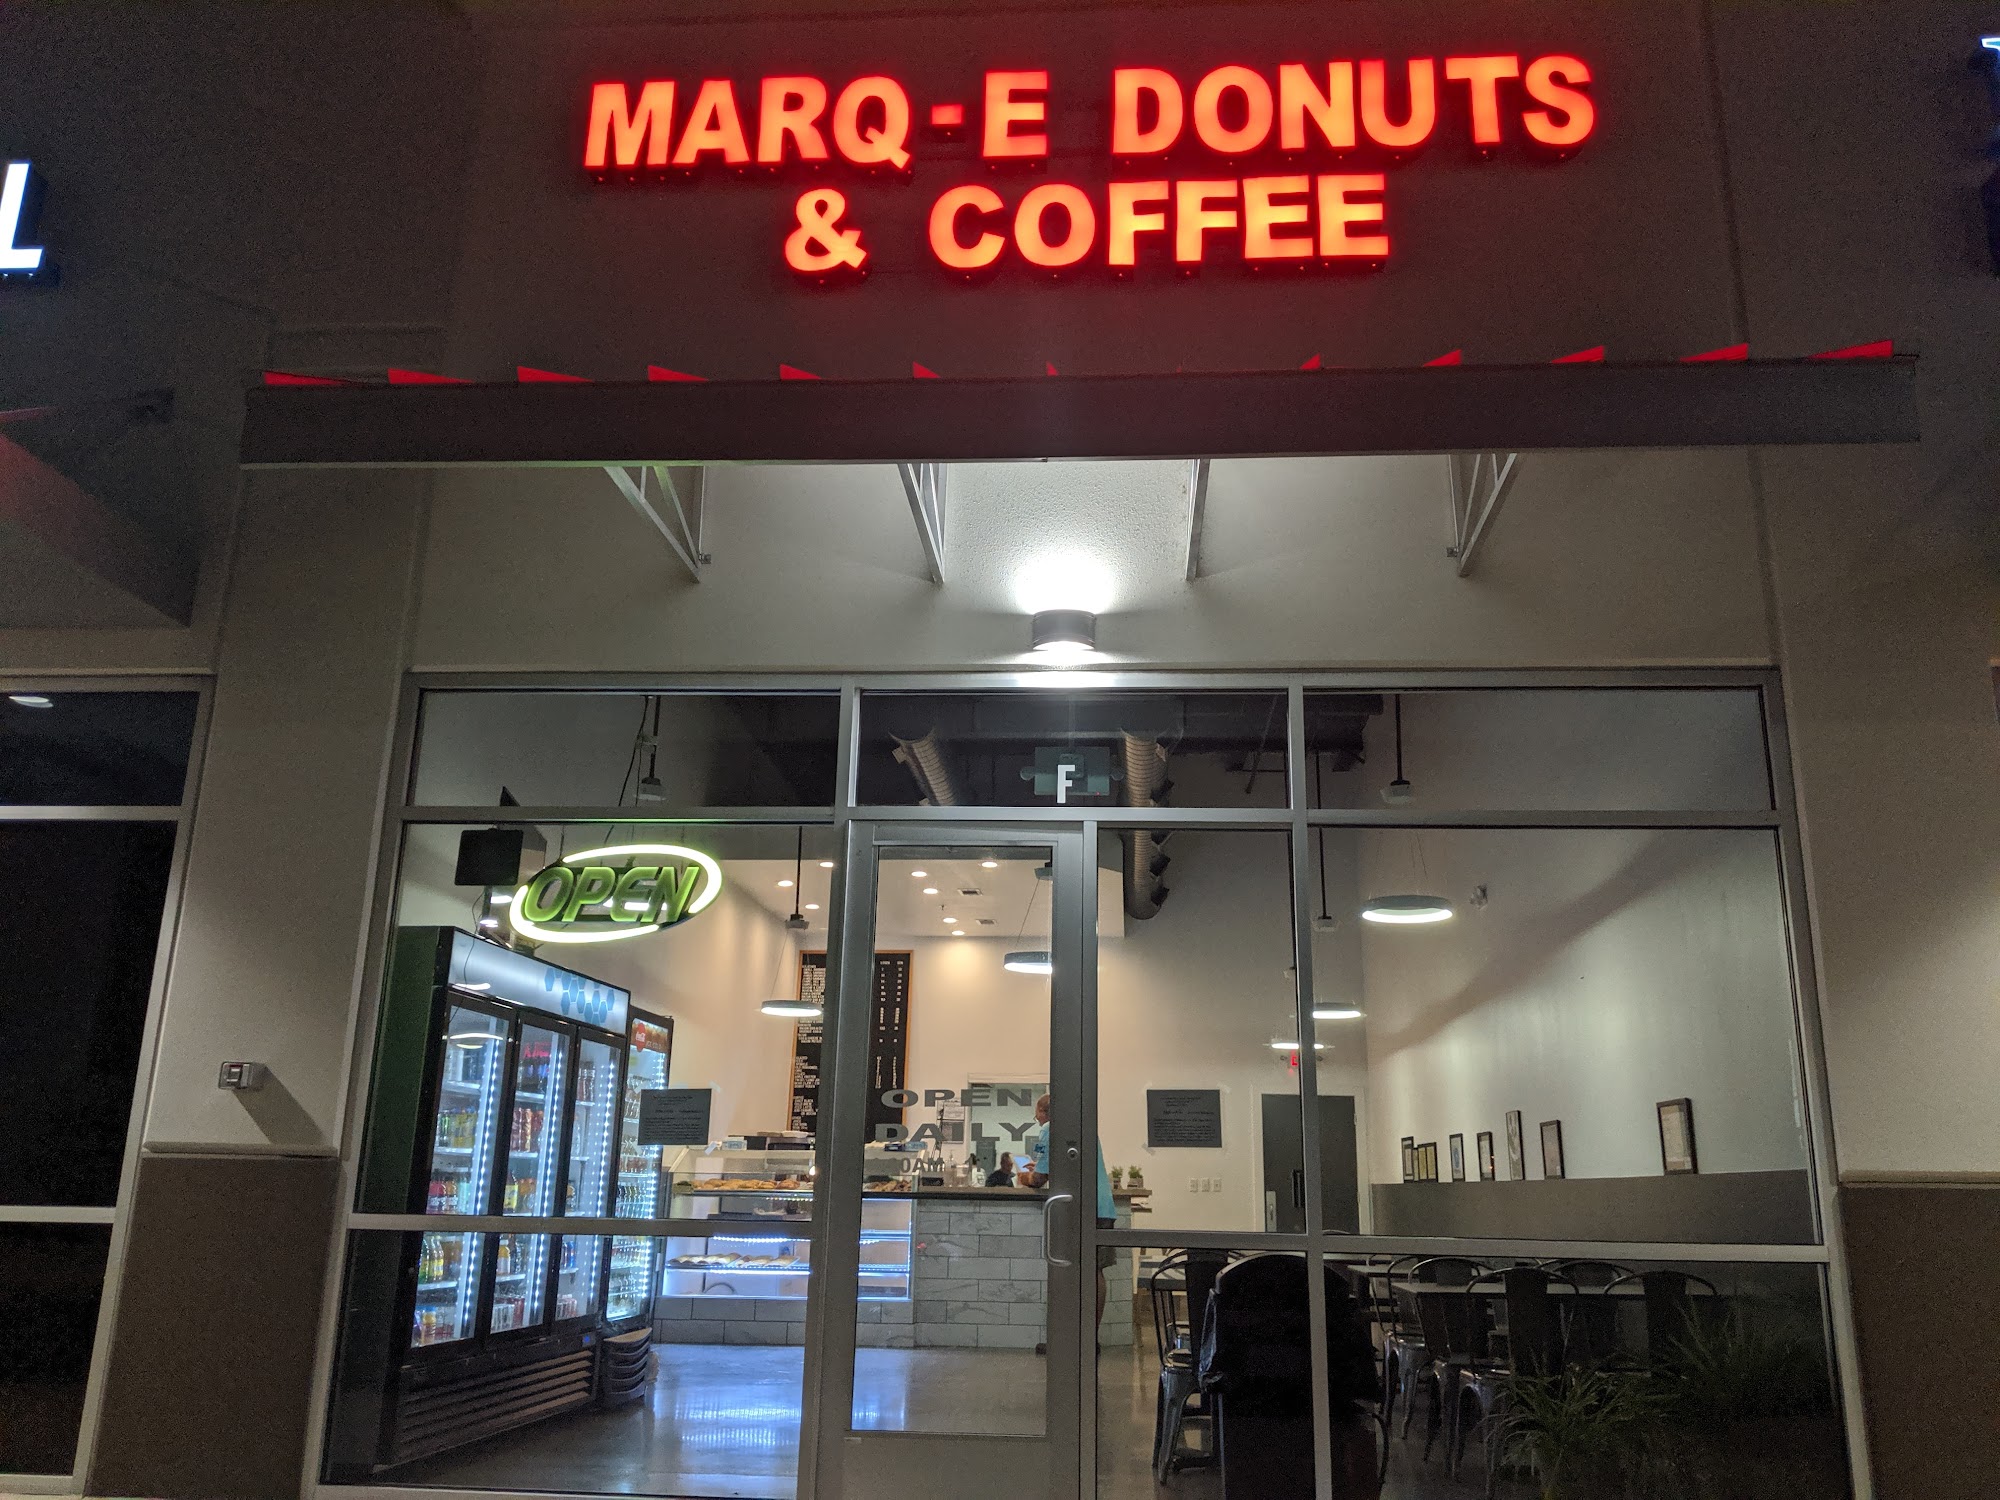 Marq-E Donuts & Coffee